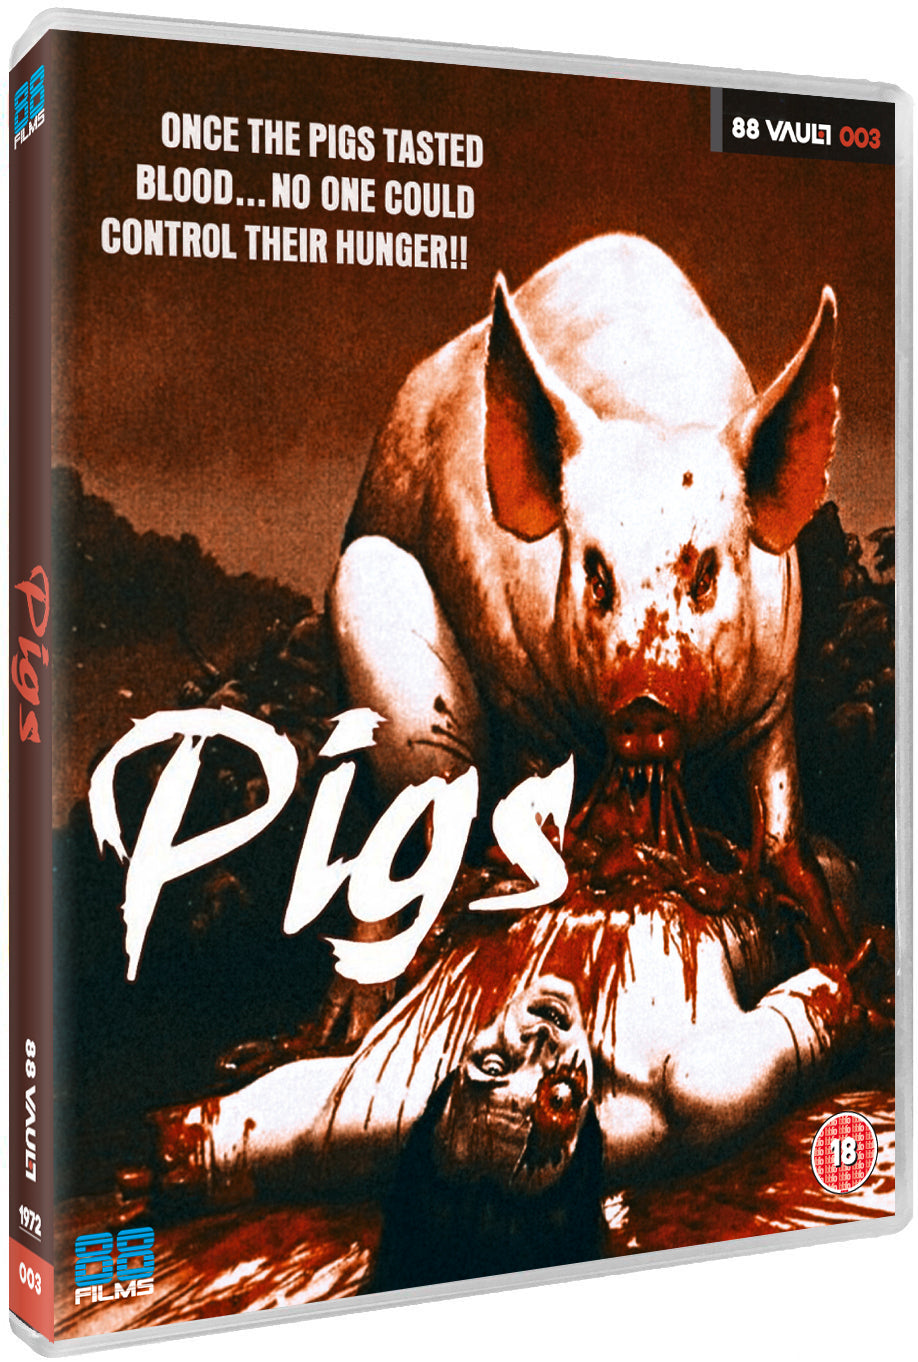 Pigs - Vault 003